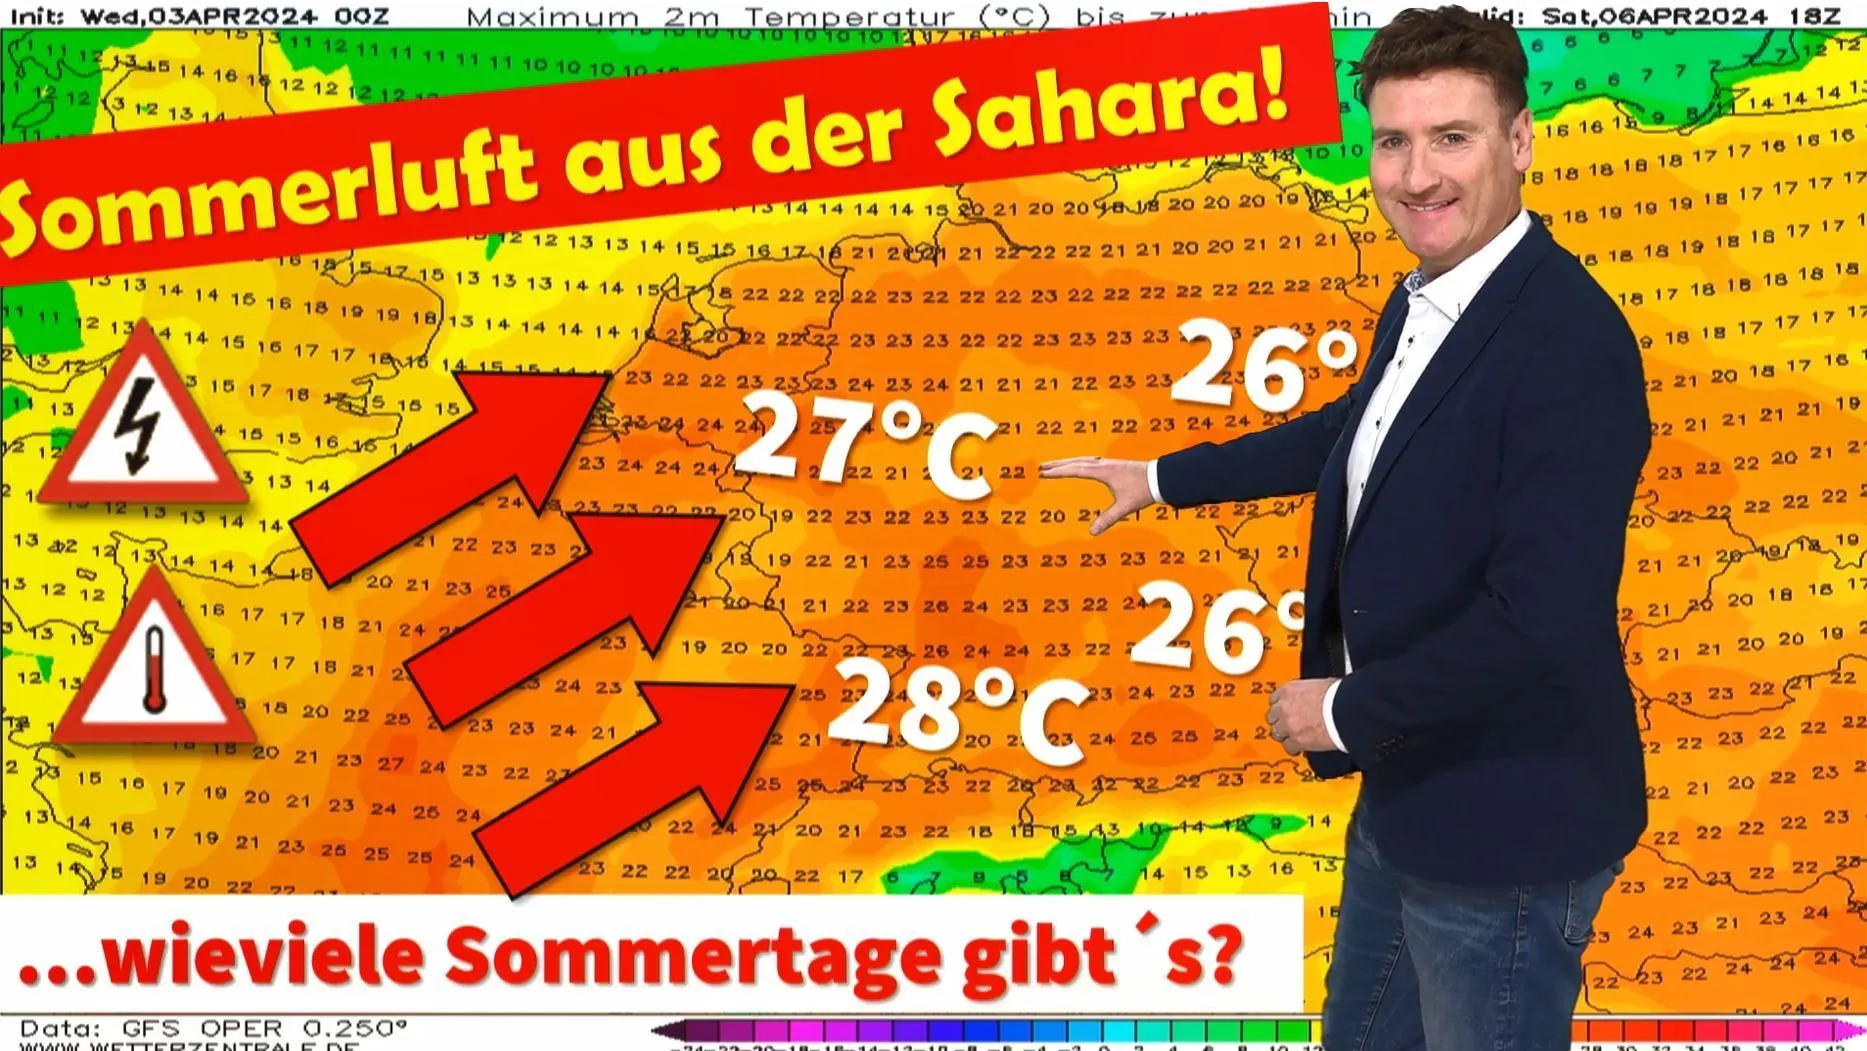 Tempo para maiores de 25 anos a partir de sábado! Inacreditável: tempo de verão no início de abril! Durante quanto tempo se manterá o calor e o verão na Alemanha?